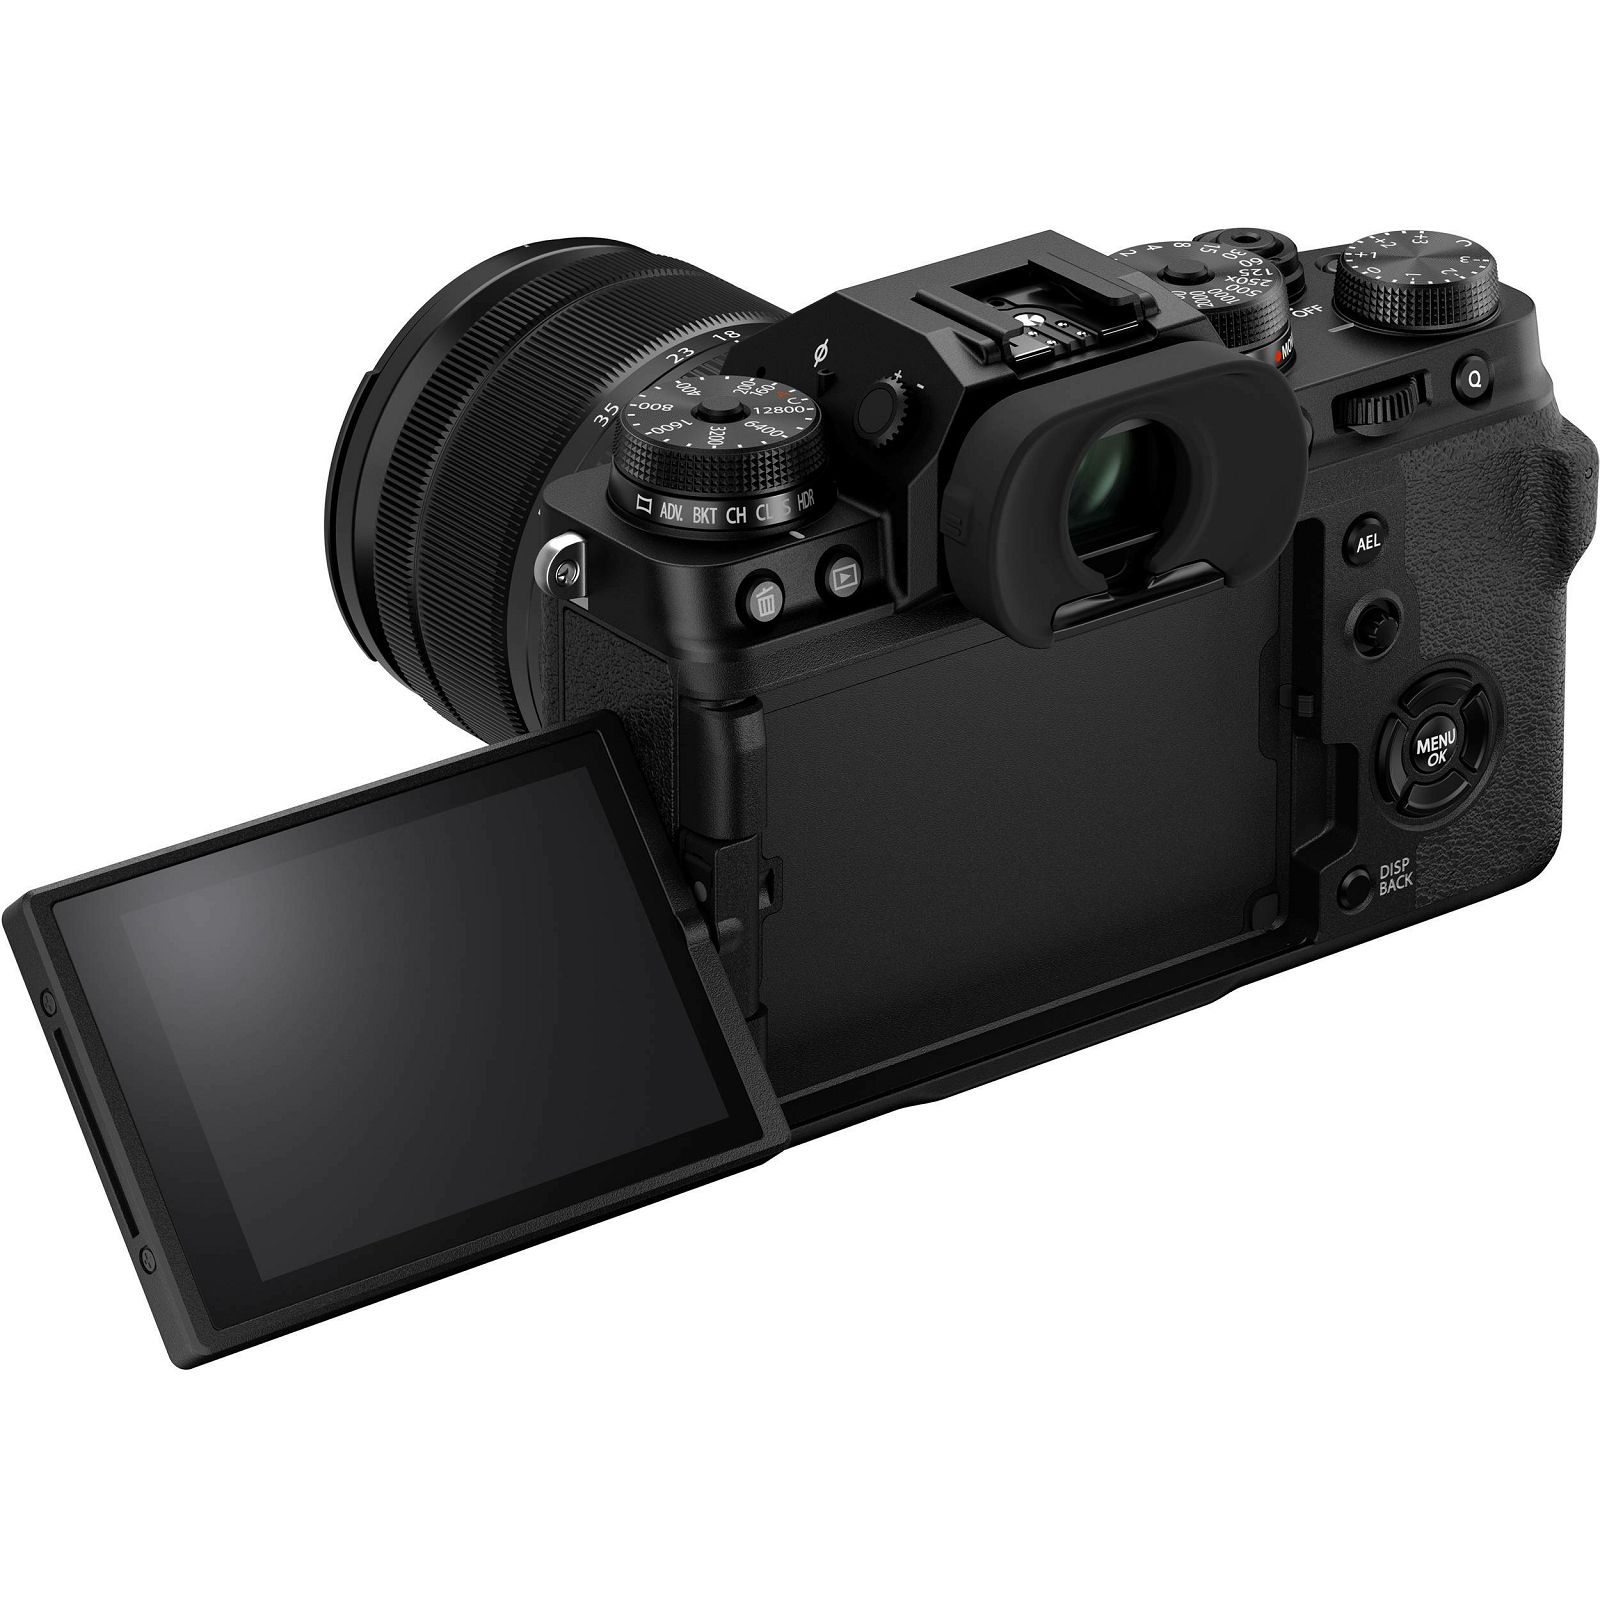 Fujifilm X-T4 + XF 16-80mm f/4 R LM OIS WR Black KIT crni Fuji digitalni mirrorless fotoaparat s objektivom (16651136)